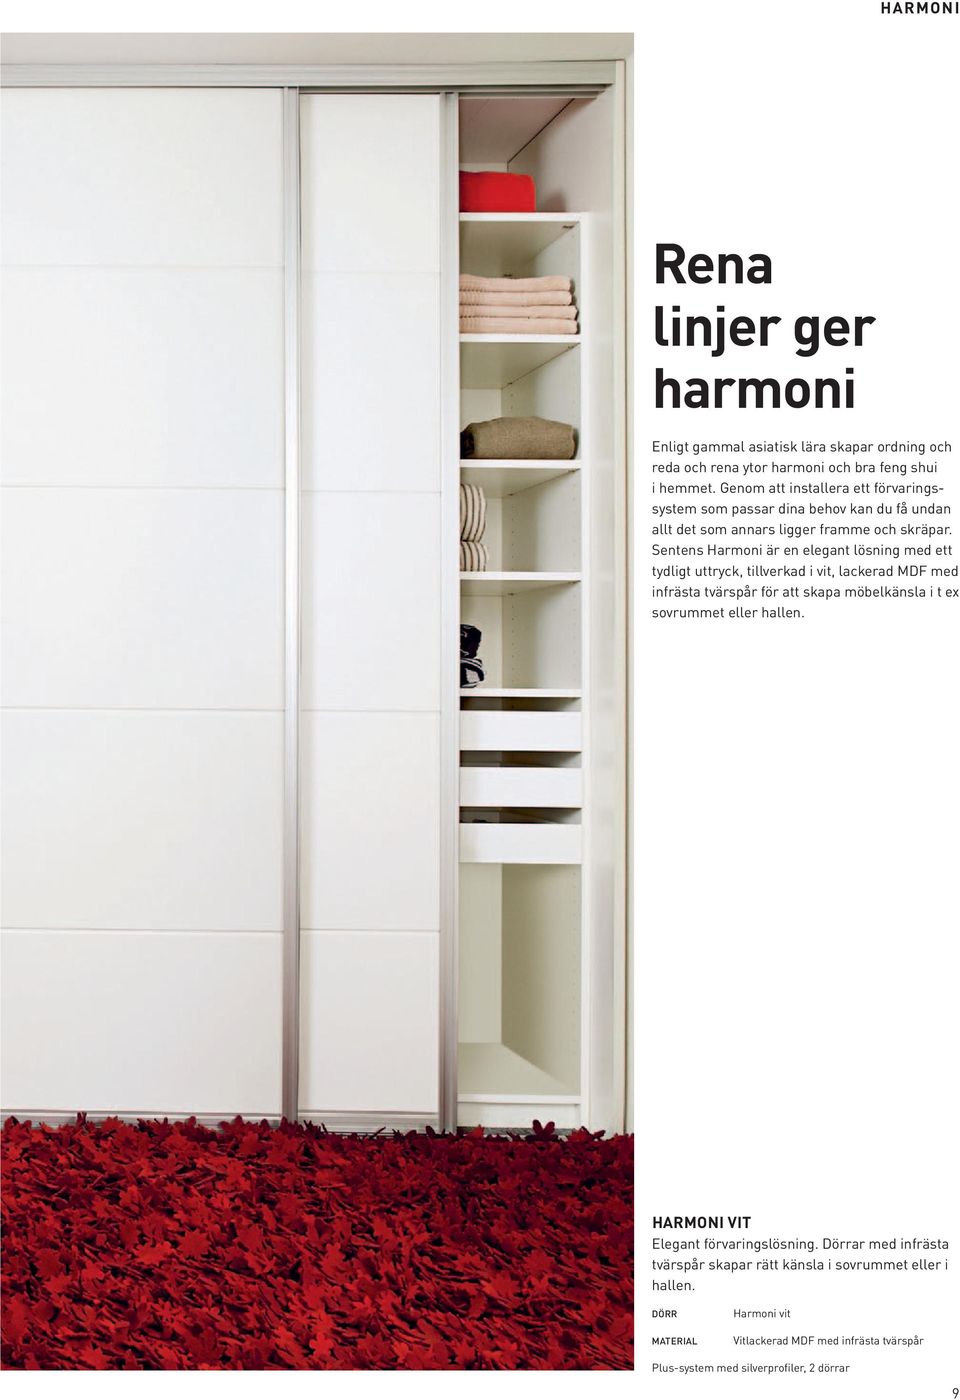 Sentens Harmoni är en elegant lösning med ett tydligt uttryck, tillverkad i vit, lackerad MDF med infrästa tvärspår för att skapa möbelkänsla i t ex sovrummet